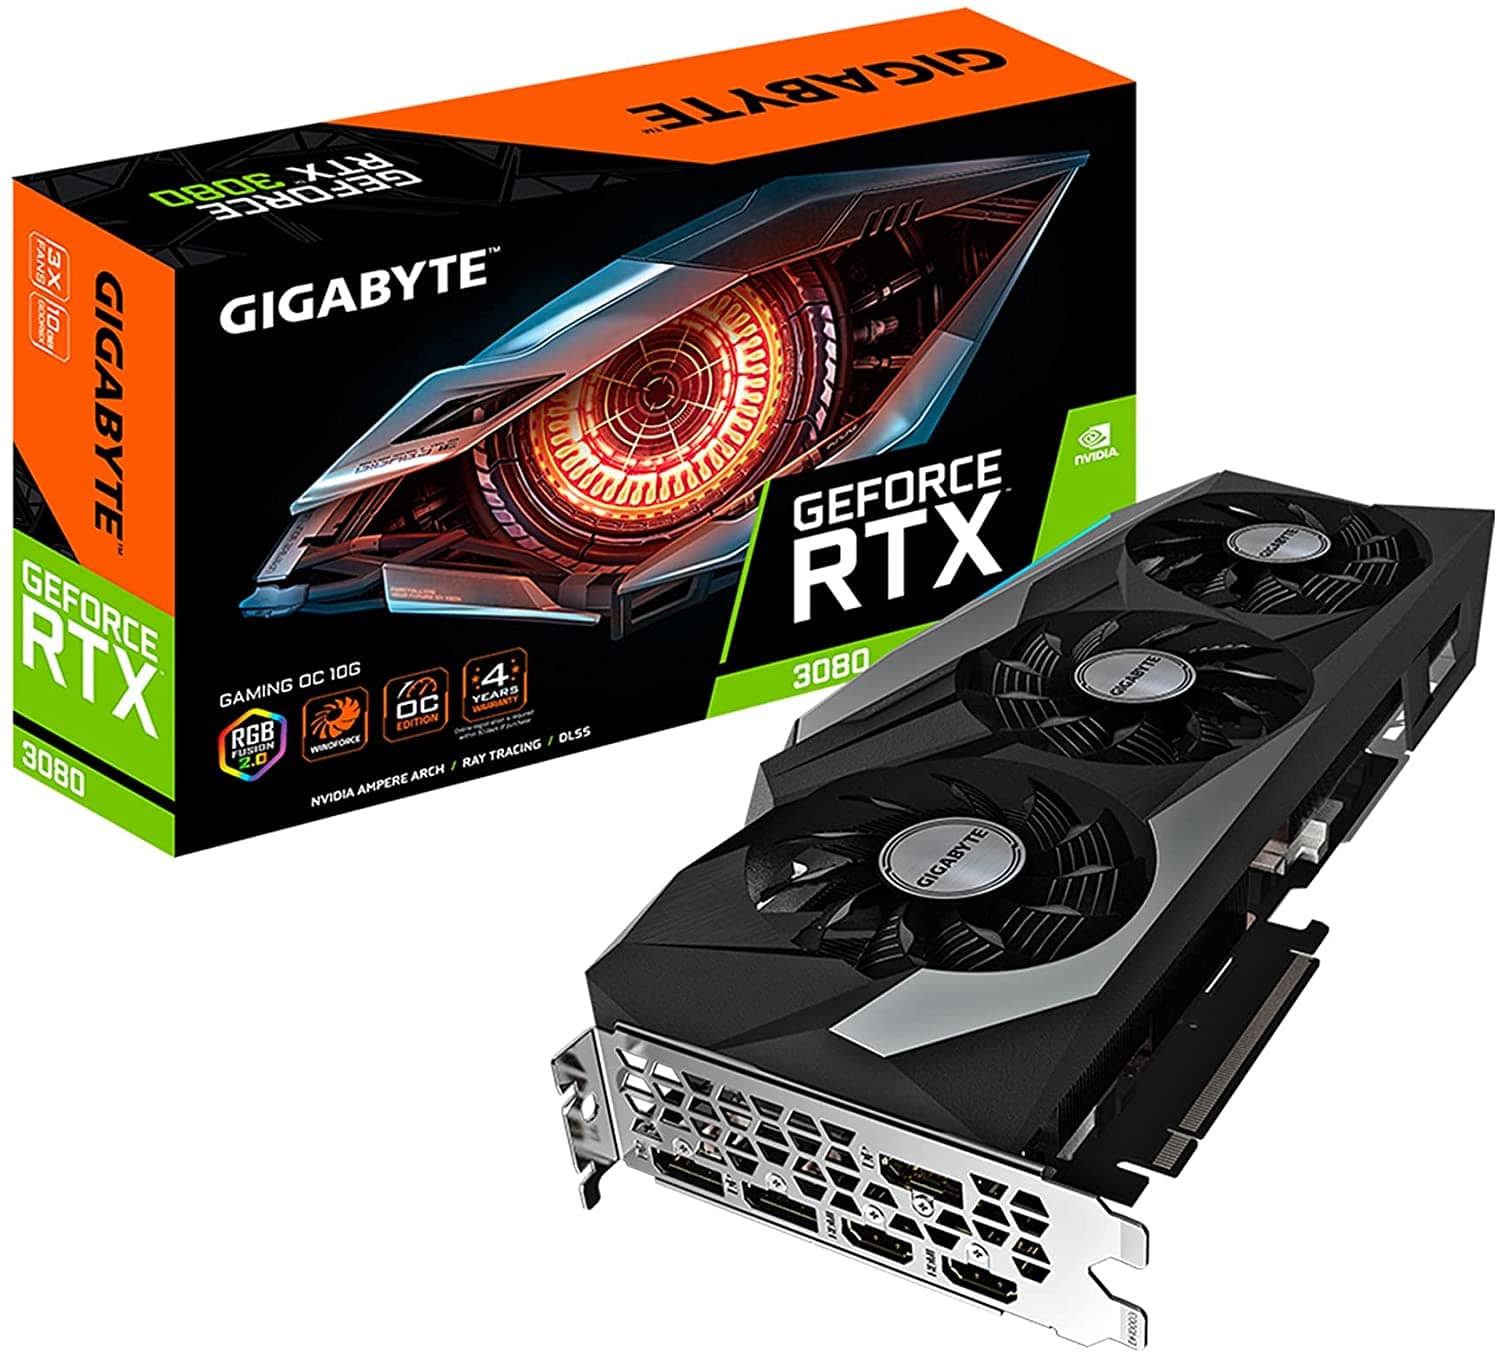 GIGABYTE GeForce RTX 3080 Gaming OC Rev 2.0